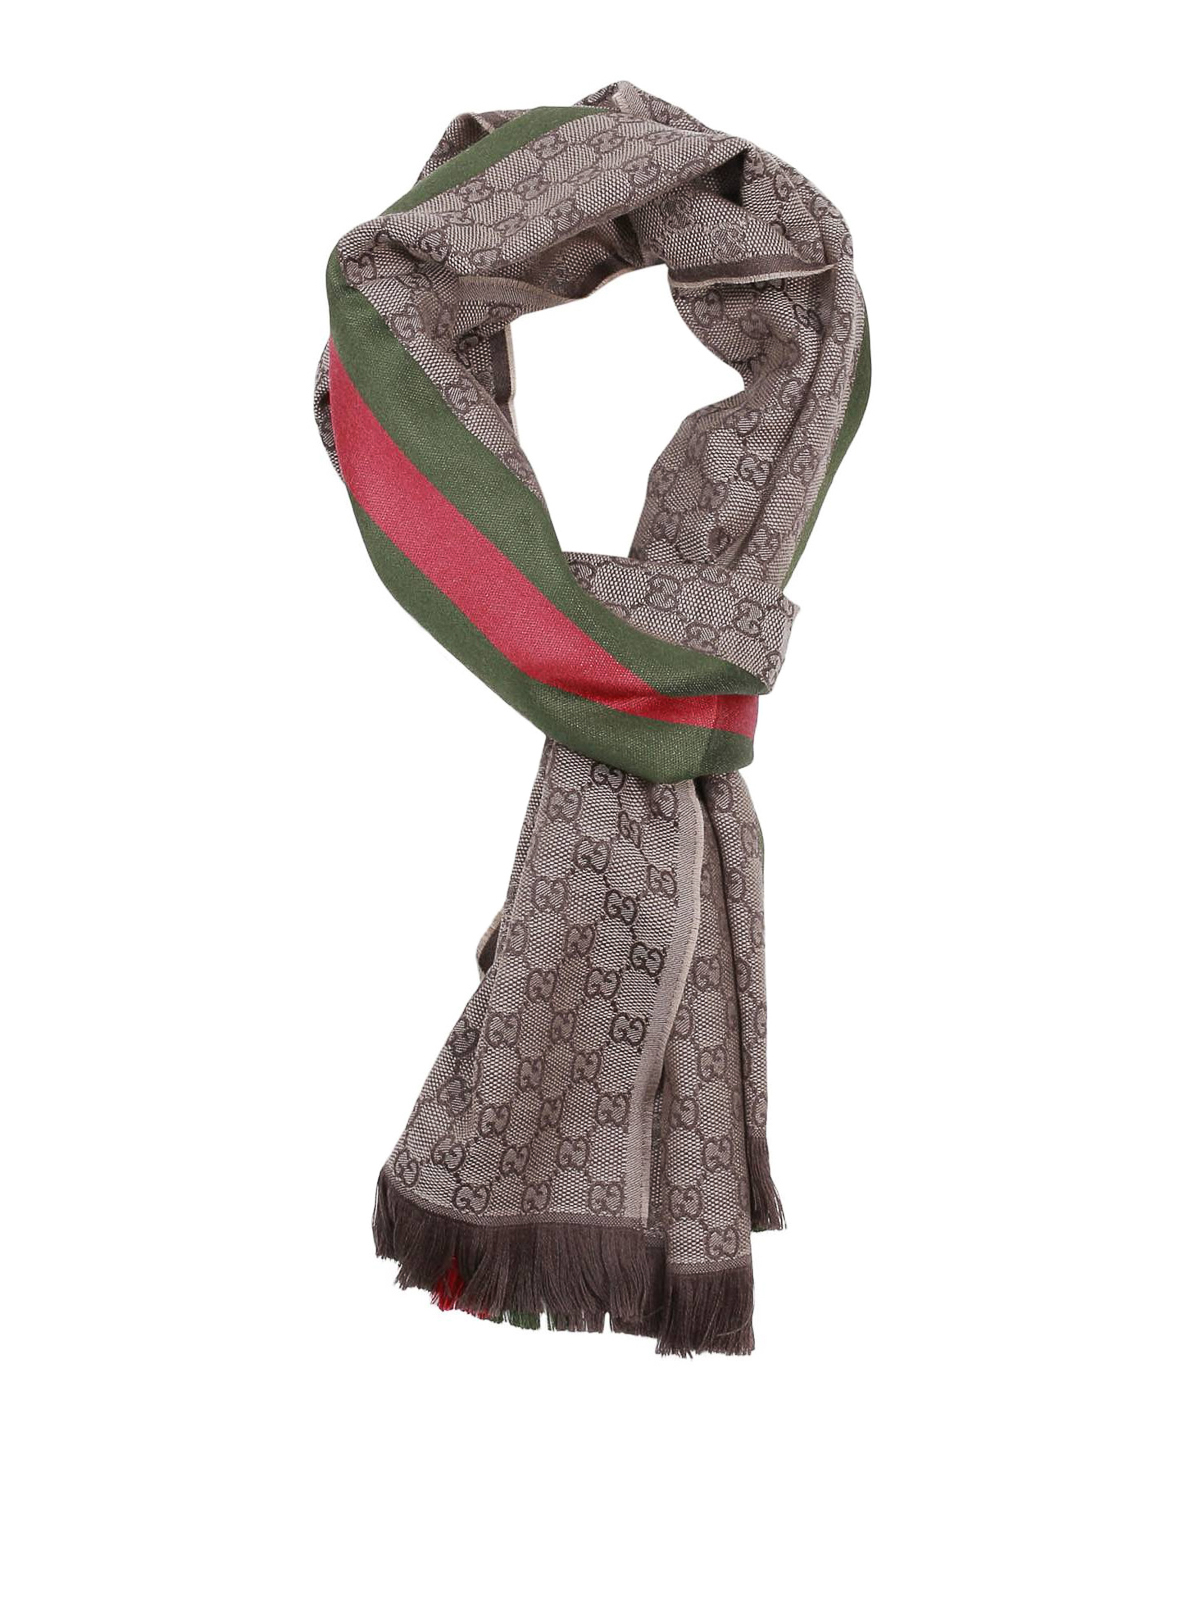 gucci scarf cost